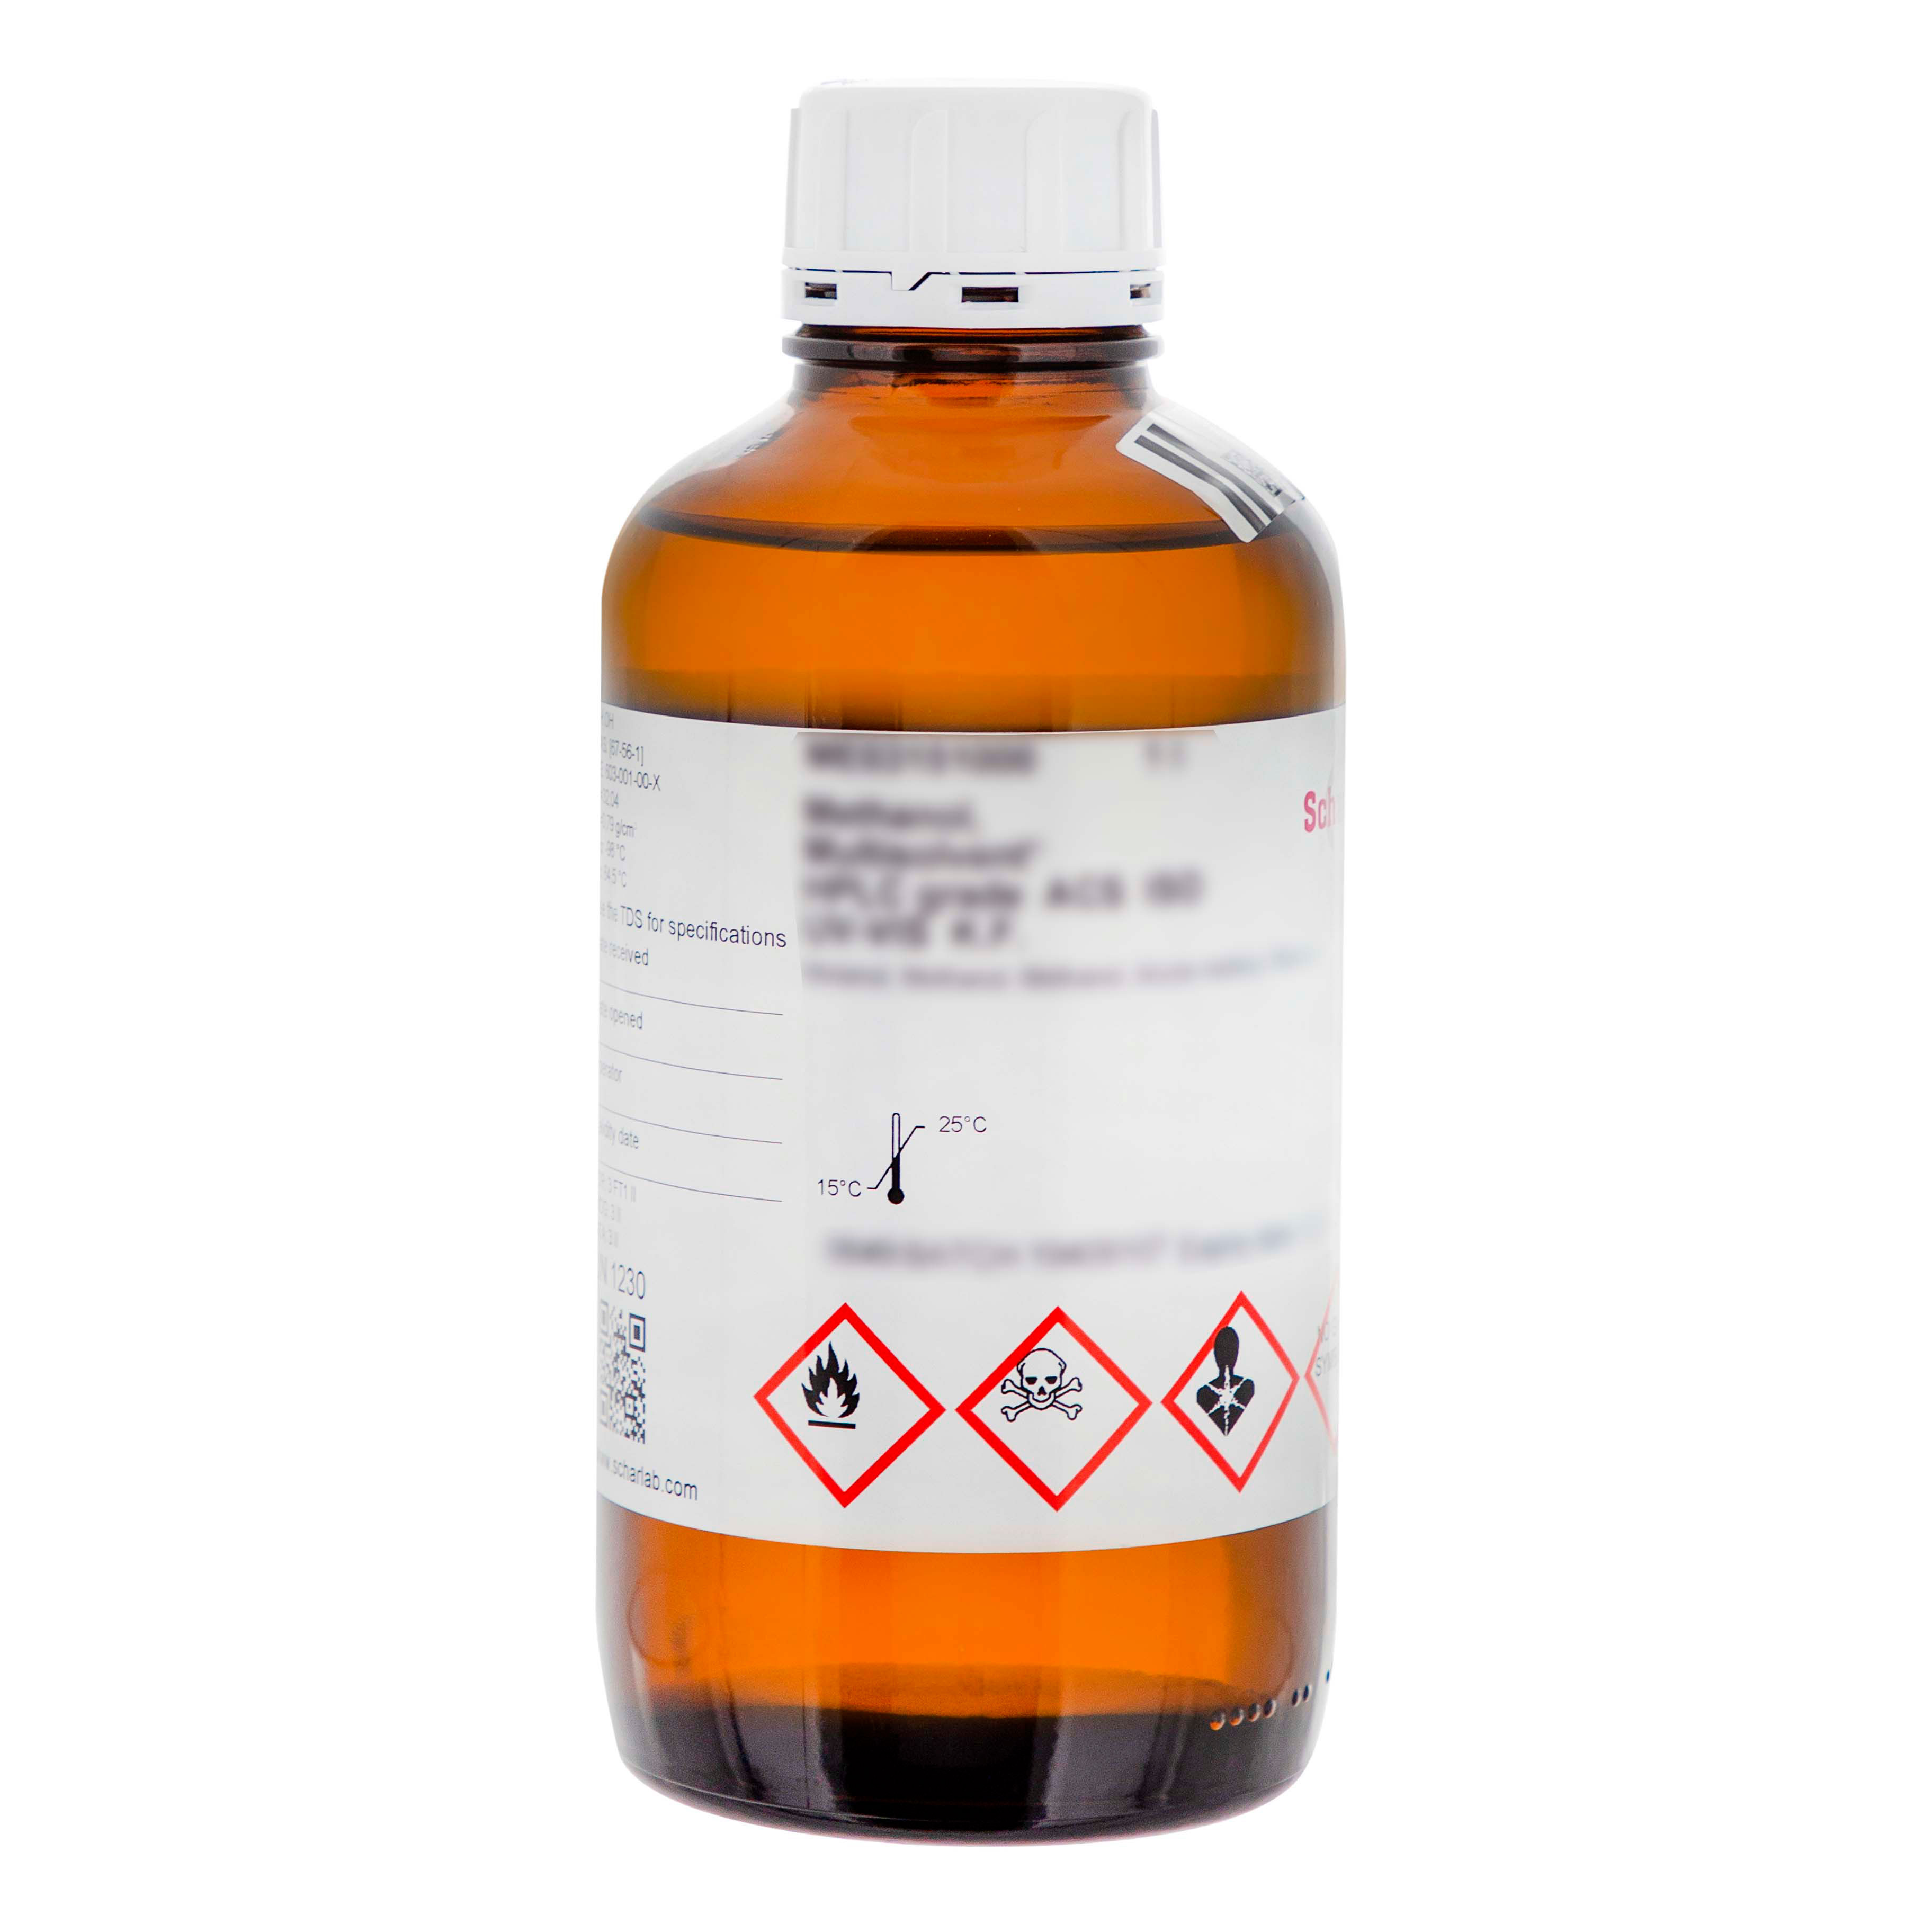 Éter dietílico, 99,5%, anhidro (máx. 0,005% H2O), con tamices moleculares, estabilizado con aprox. 7 ppm de 2,6-Di-terc-butil-4-metilfenol (BHT), Etiléter